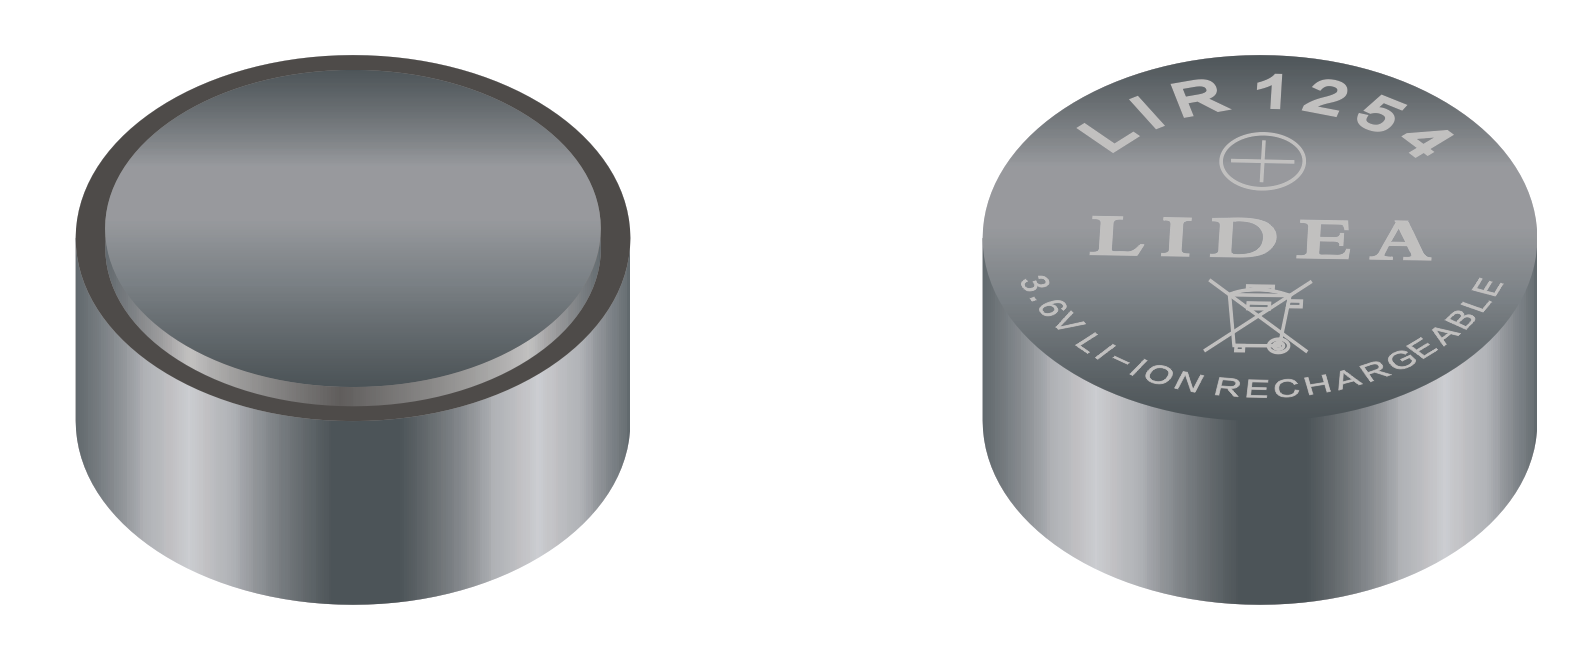 1254可充鋰離子藍牙耳機鋼殼紐扣電池LIDEA品牌